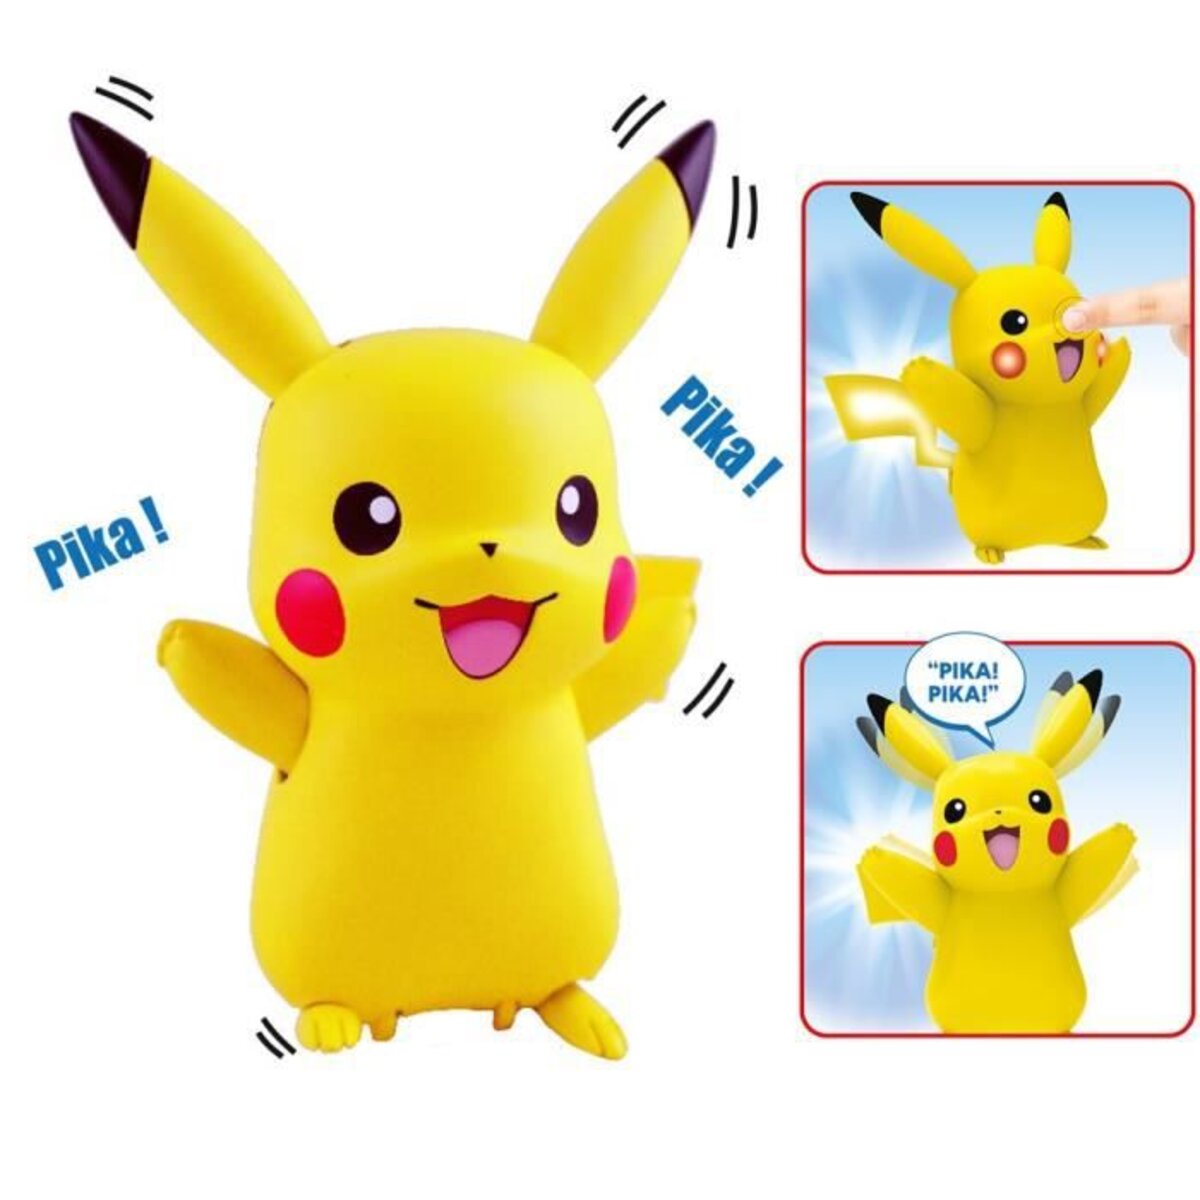 POKEMON - My Partner Pikachu - Jeu électronique interactif